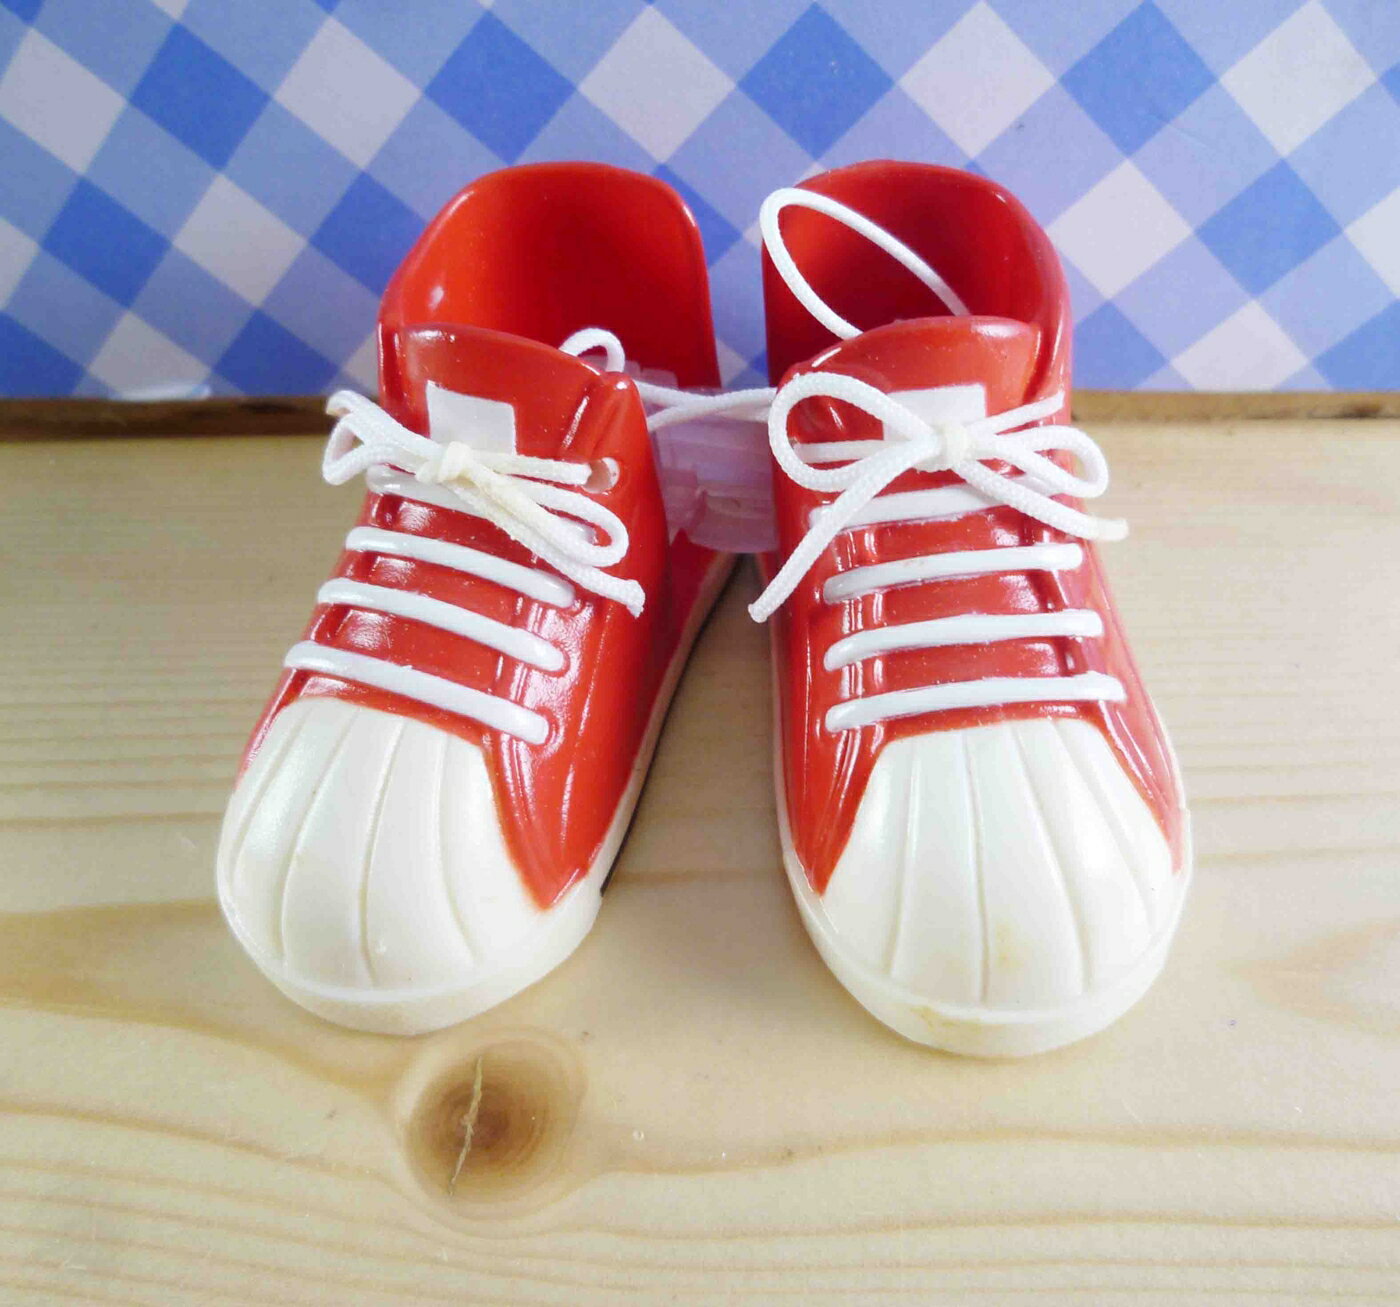 【震撼精品百貨】置物座-鞋子造型-紅色 震撼日式精品百貨